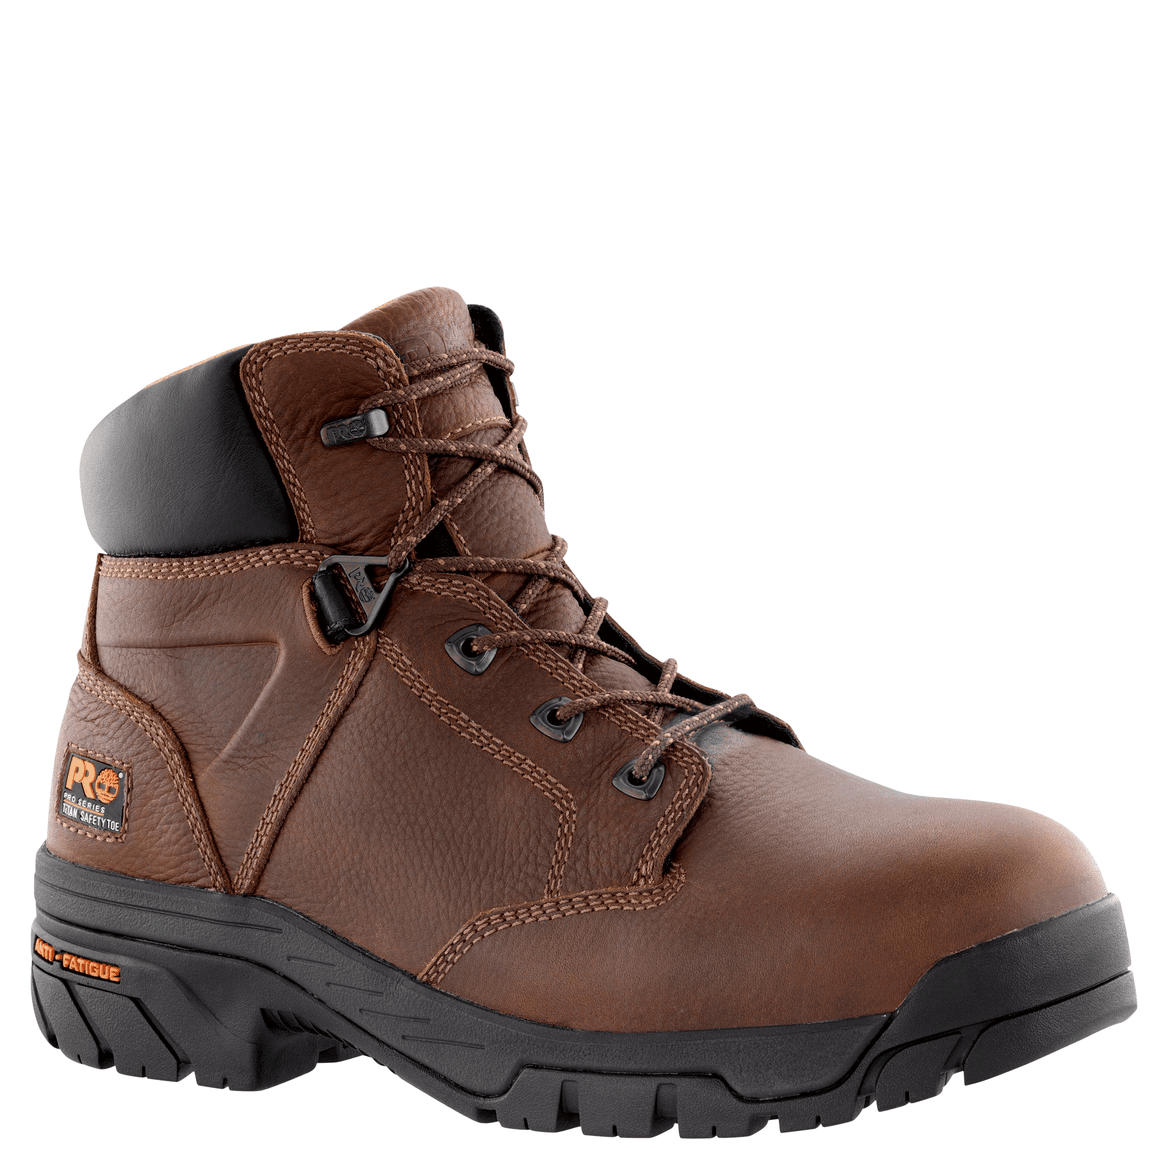 Timberland Pro Men's 6" Helix Waterproof Alloy Toe Work Boot - Brown 85594 - ShoeShackOnline